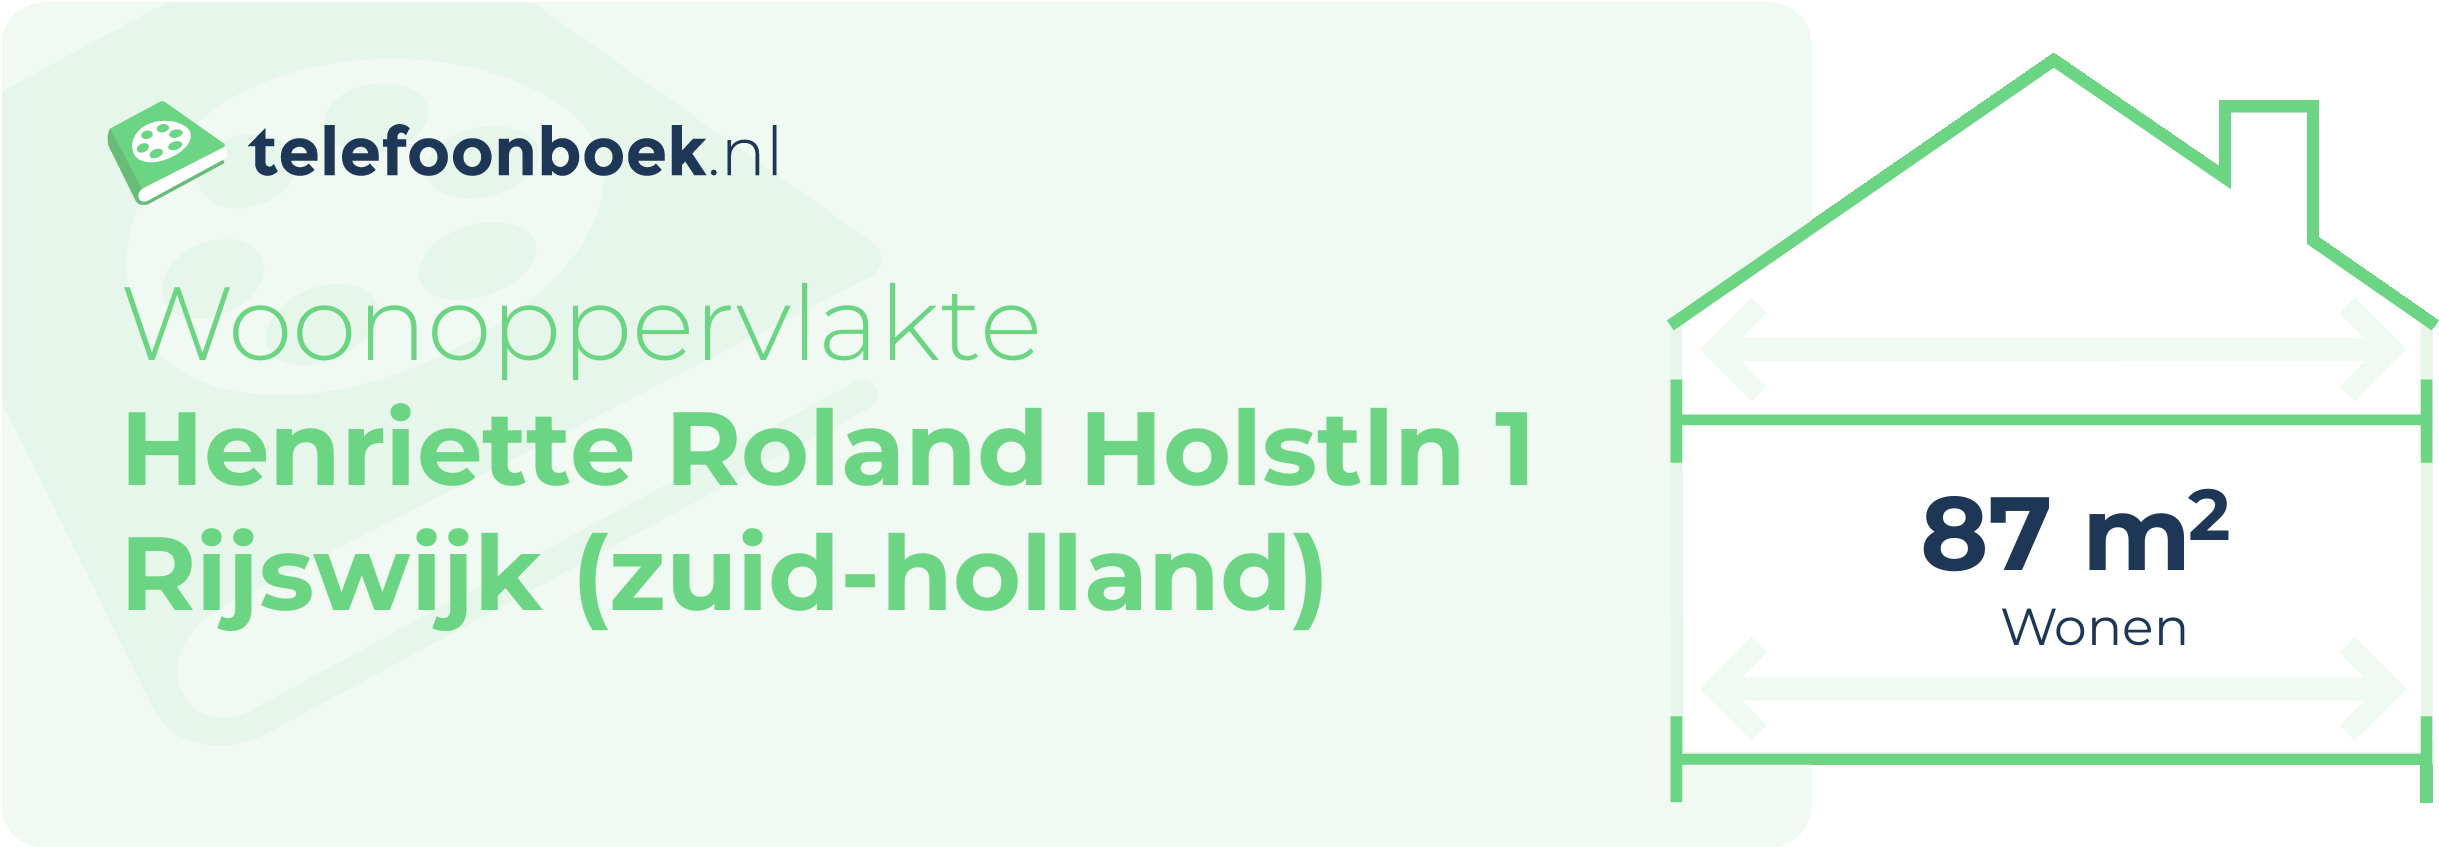 Woonoppervlakte Henriette Roland Holstln 1 Rijswijk (Zuid-Holland)